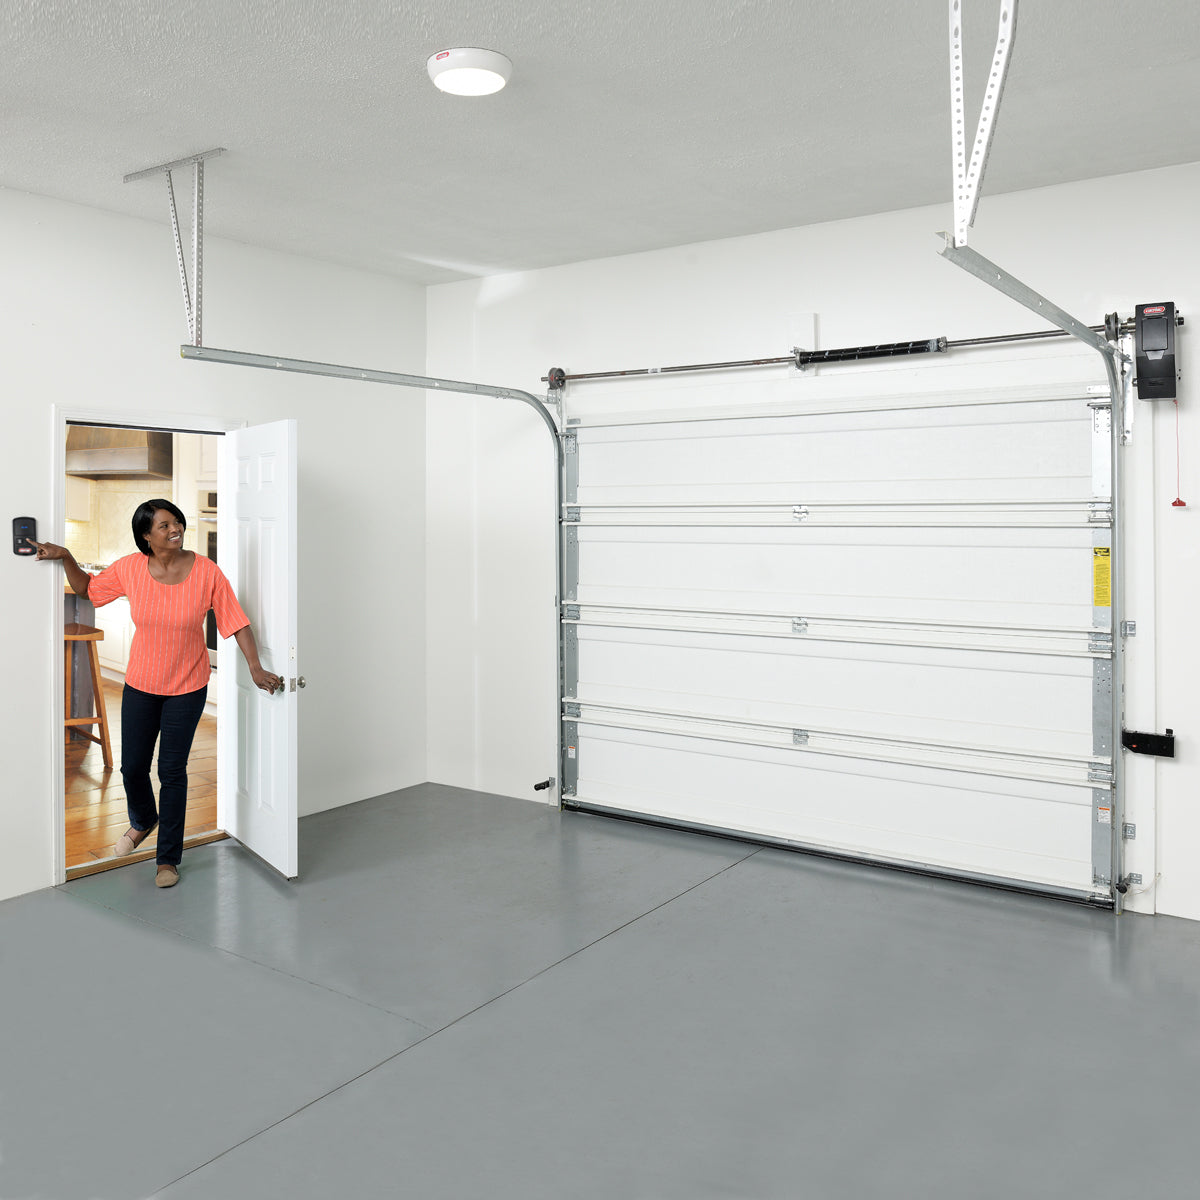 42++ Garage door foot handle ideas in 2021 